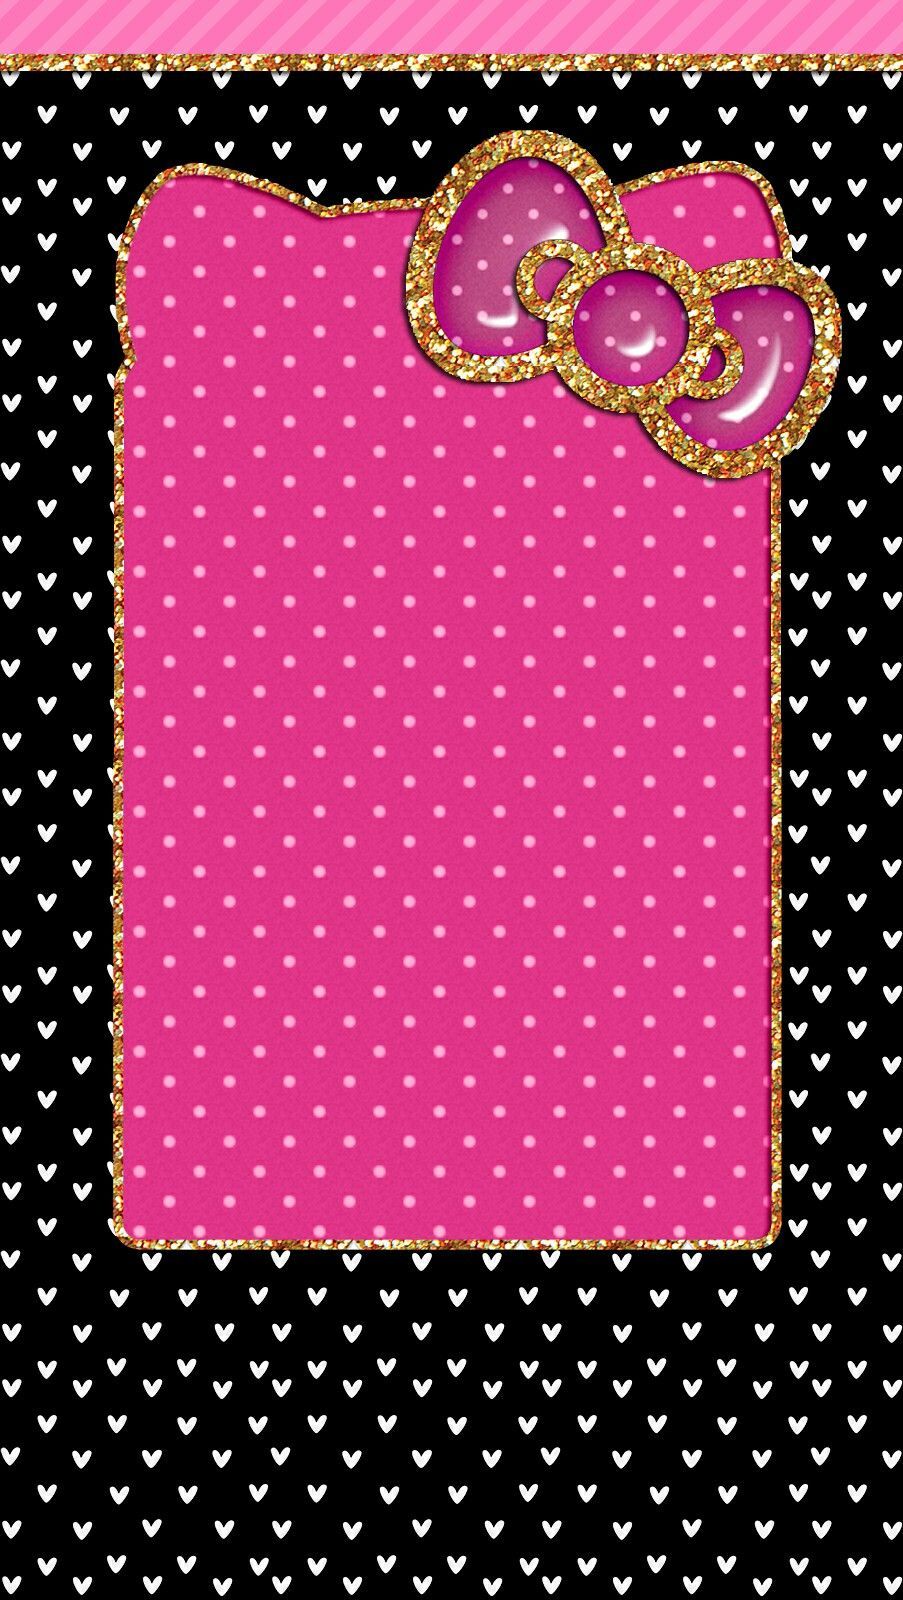 Cute Luis Vuitton and hello Kitty cute wallpapers for iPhone pink  Hello  kitty iphone wallpaper, Pink wallpaper hello kitty, Hello kitty wallpaper